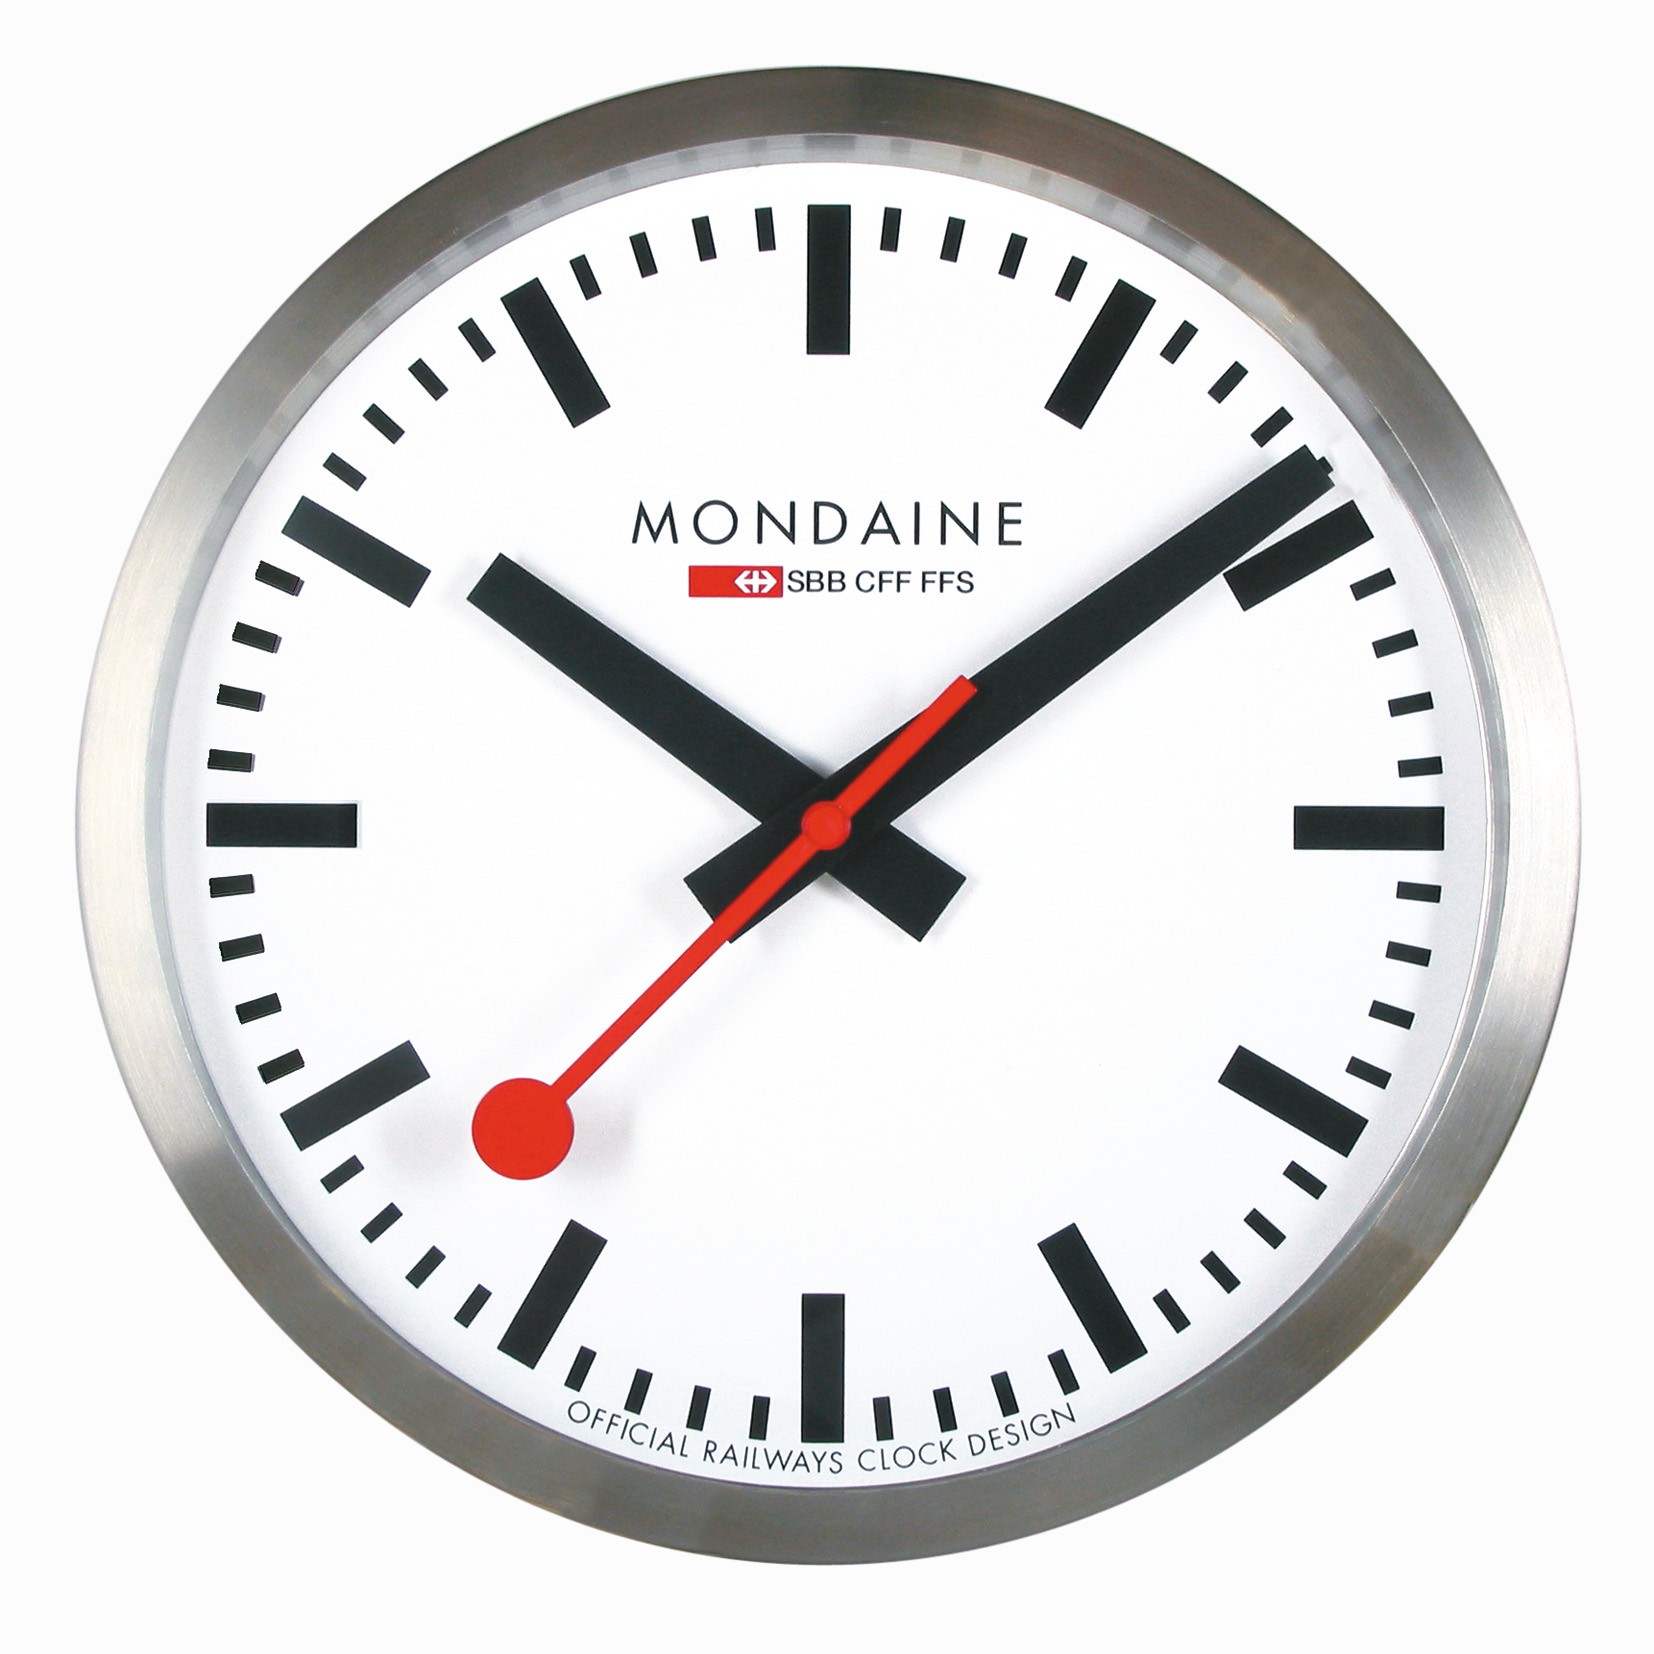 Mondaine swiss watch WALL CLOCK 25CM - A990.CLOCK.16SBB